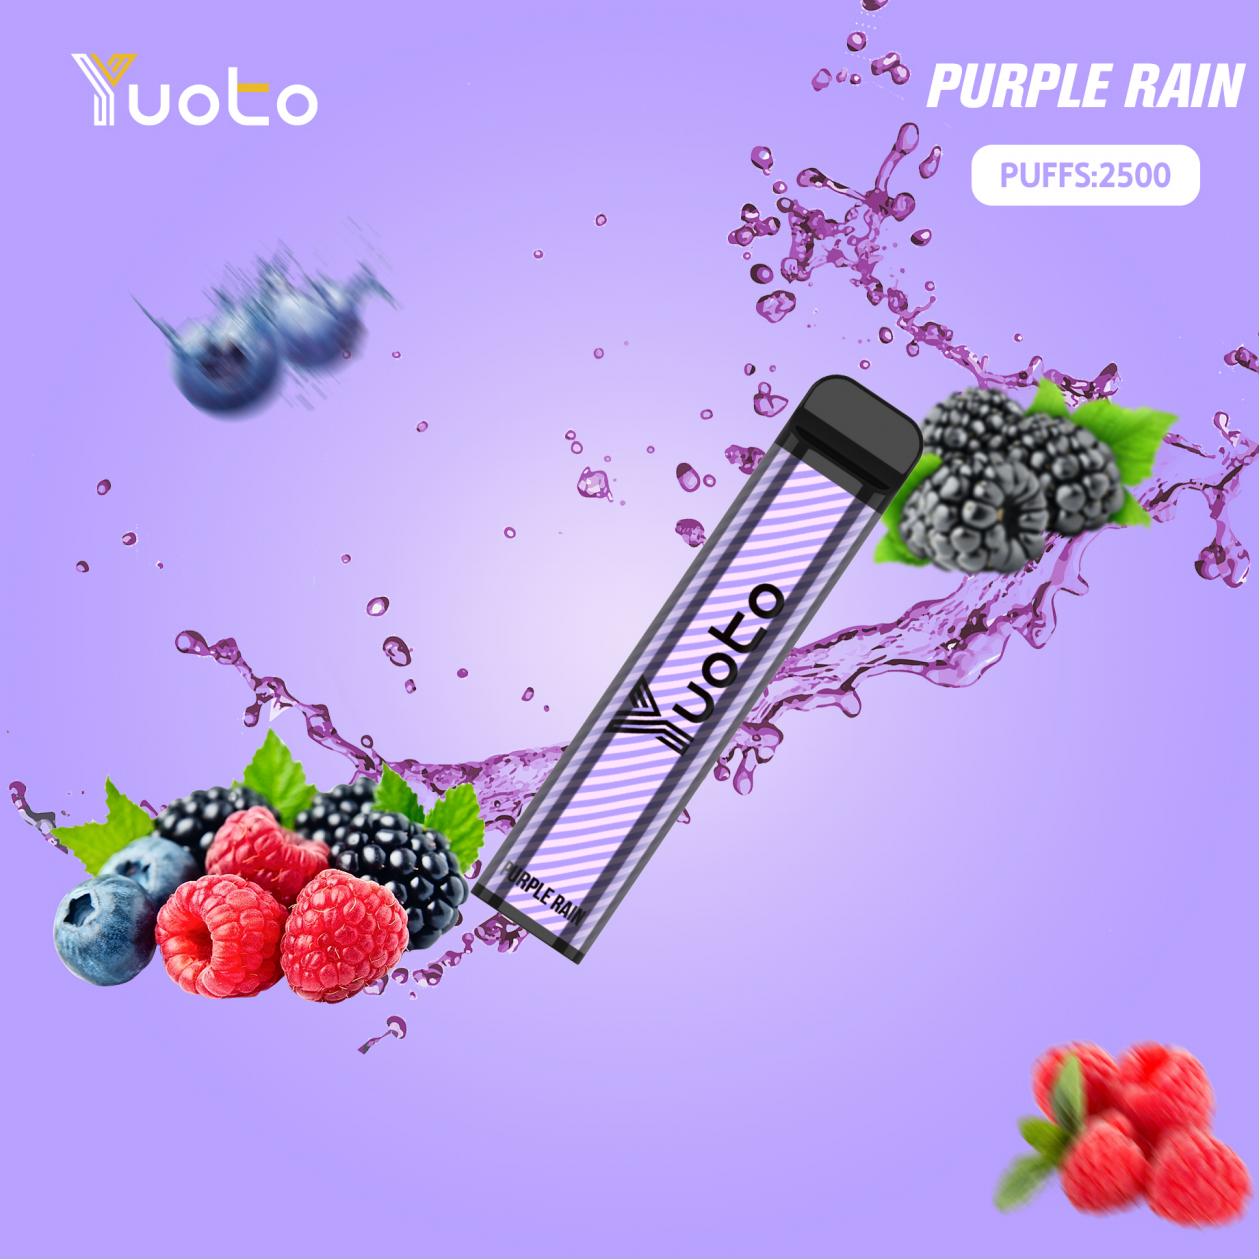  Upptäck förtrollande smaker med XXL Purple Rain Vape! 🍇🍓 En harmonisk symfoni av söta blåbär, saftiga hallon och smultron som dansar på dina smaklökar.  Skapa rika moln av lila lycka med denna högkvalitativa e-juice. 💨 Upplev den lila regnbågen av smaker idag! 😍